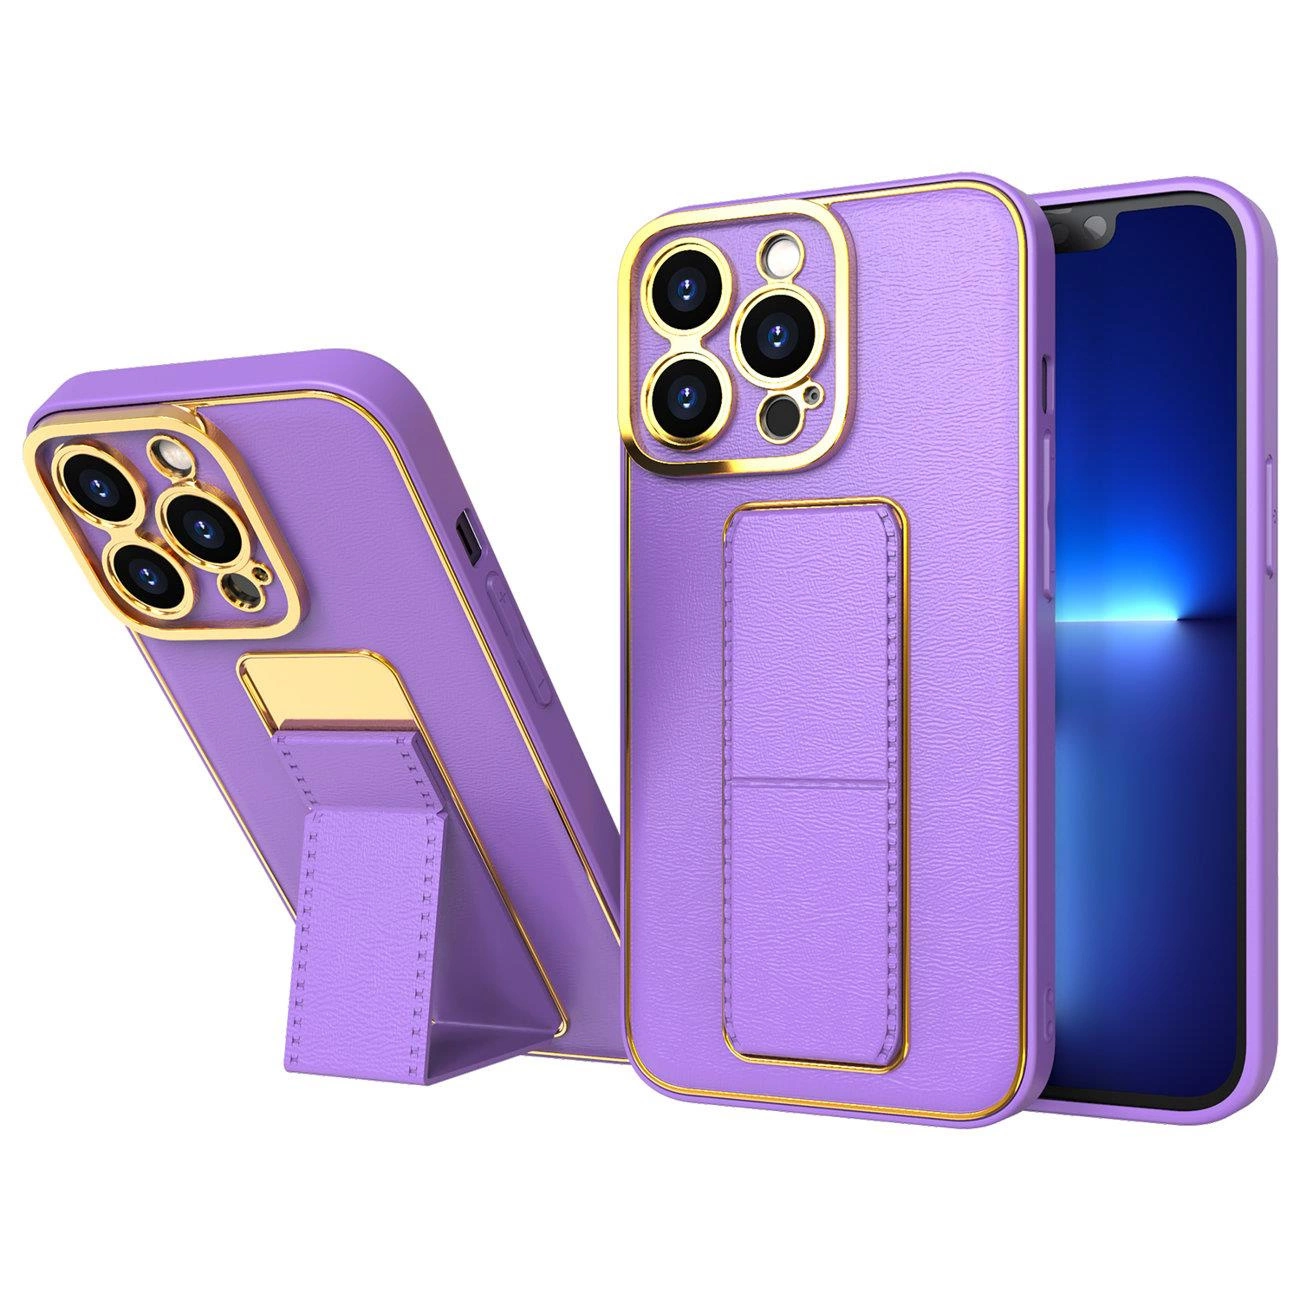 Hurtel Nové pouzdro Kickstand pro iPhone 12 se stojánkem fialové barvy